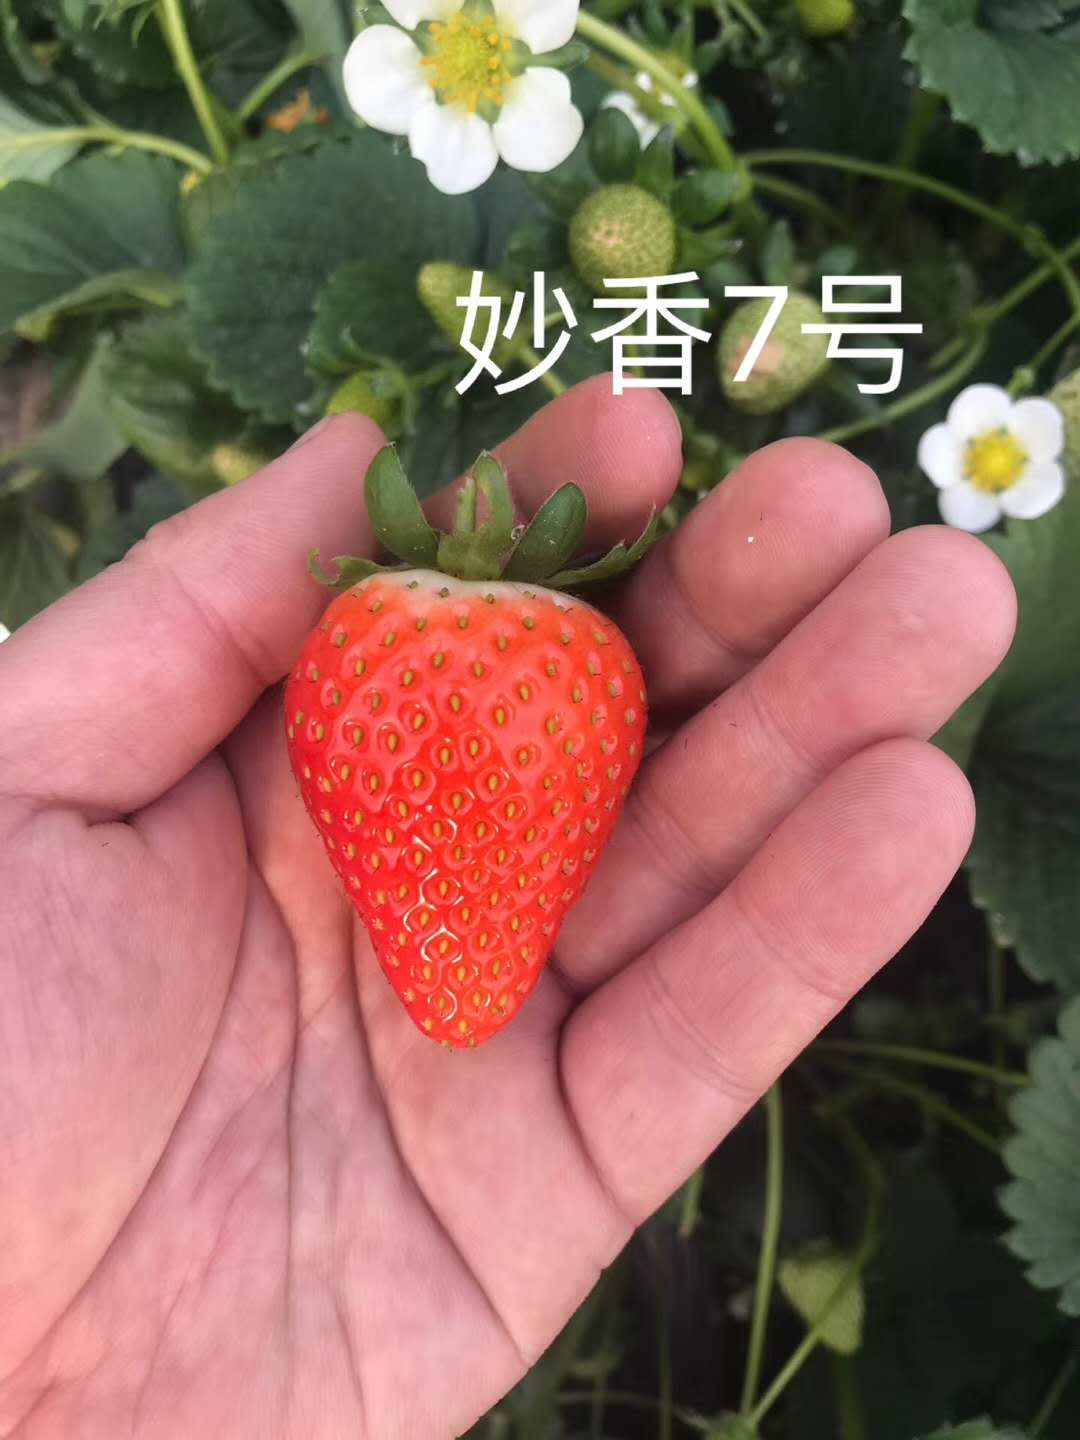 丰香草莓苗管理技术、章姬草莓苗基地